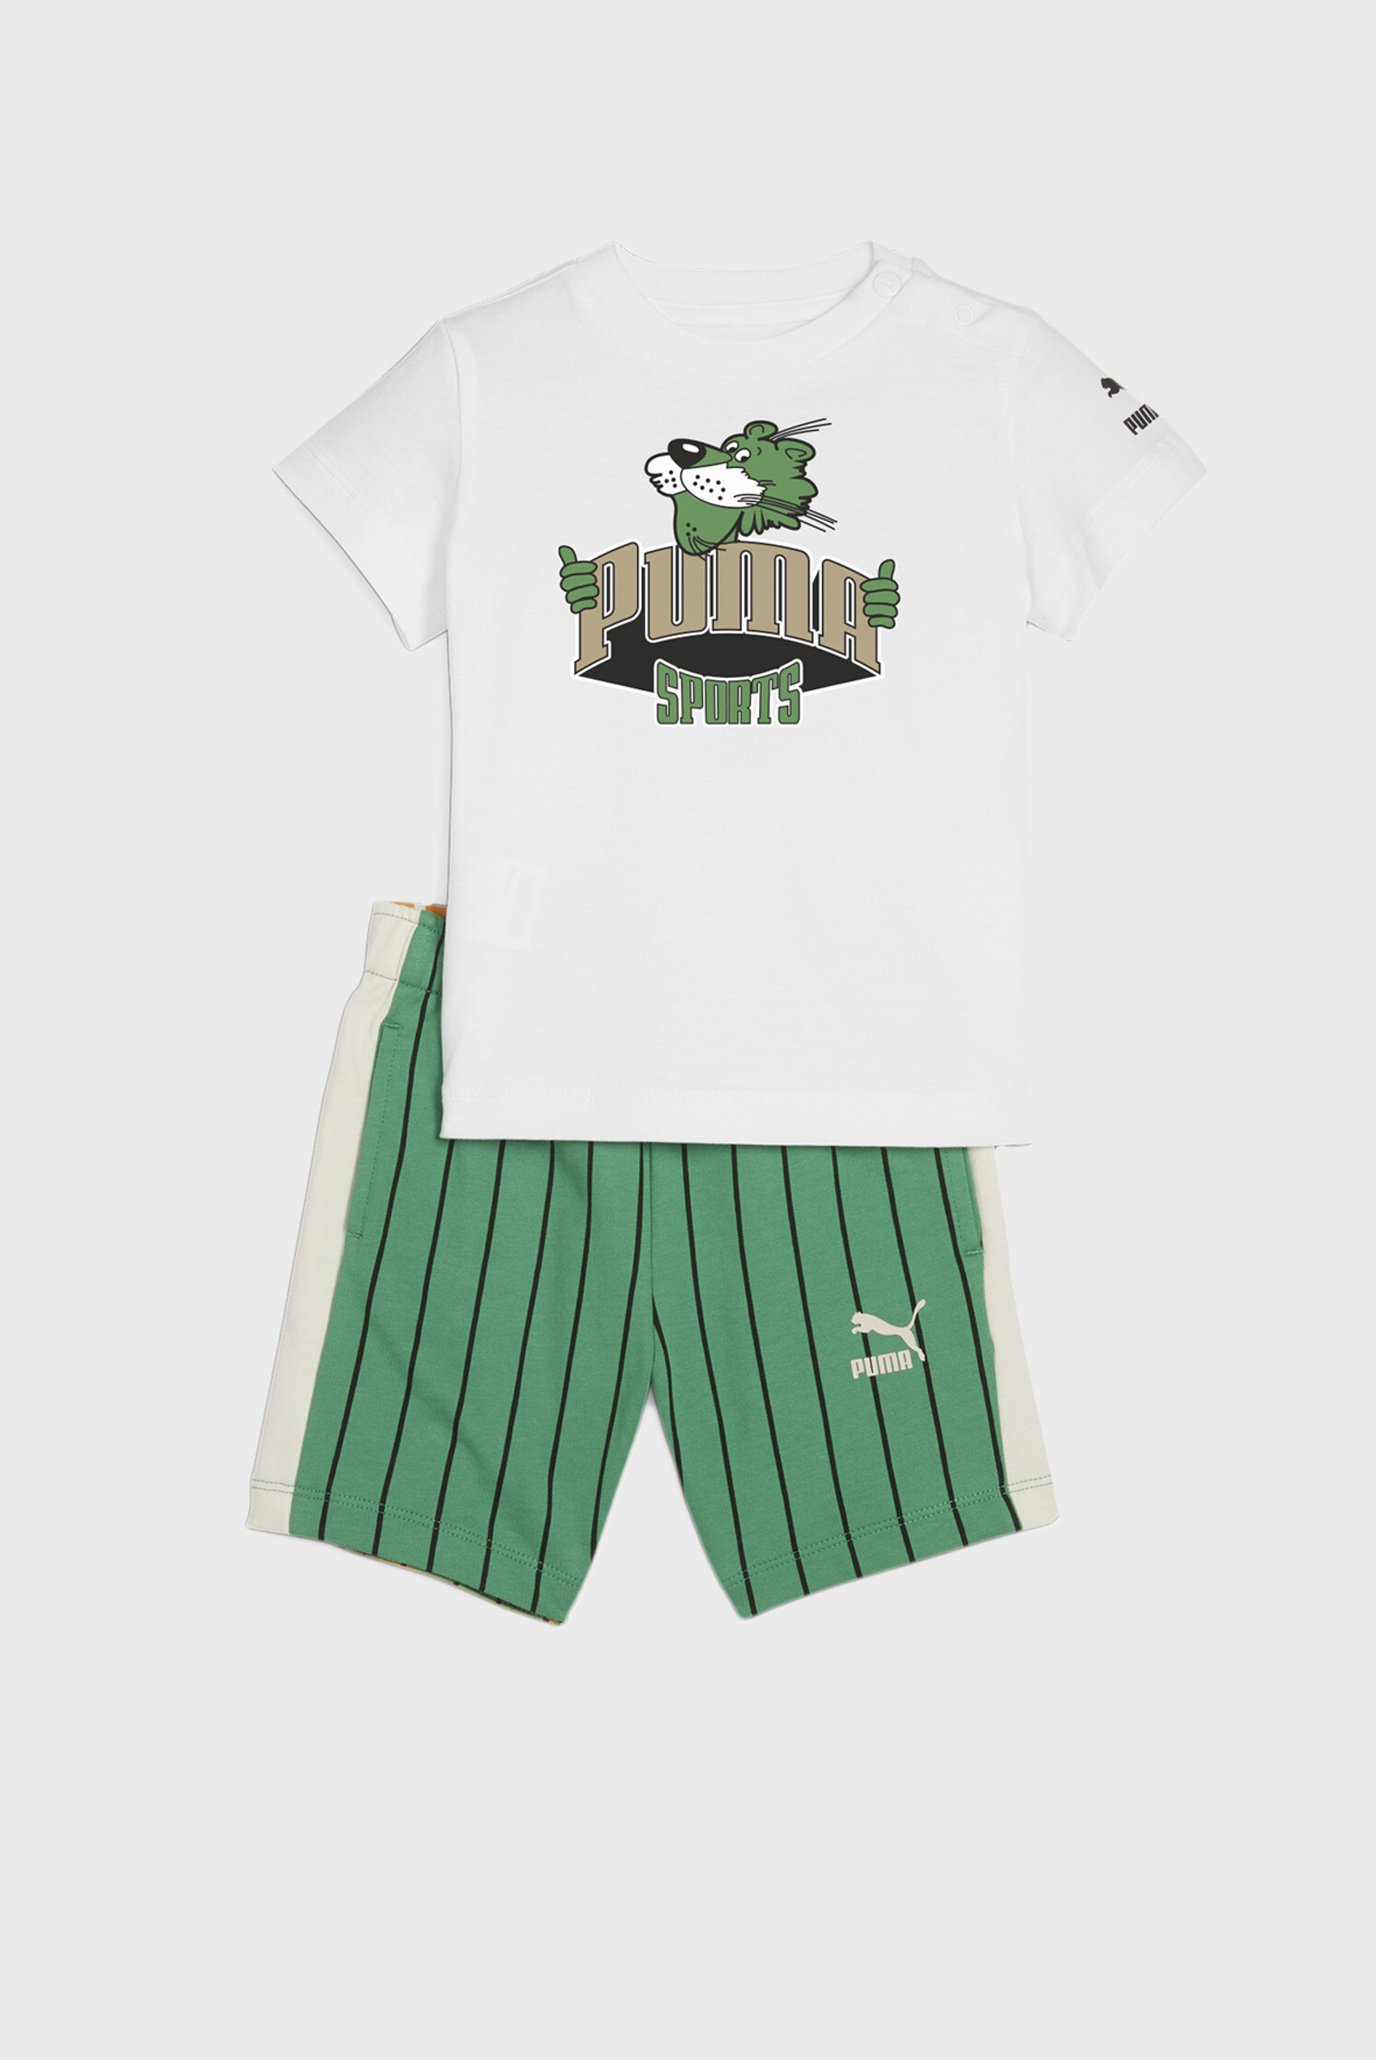 Детский спортивный костюм (футболка, шорты) MINICATS FANBASE Toddlers' Set 1